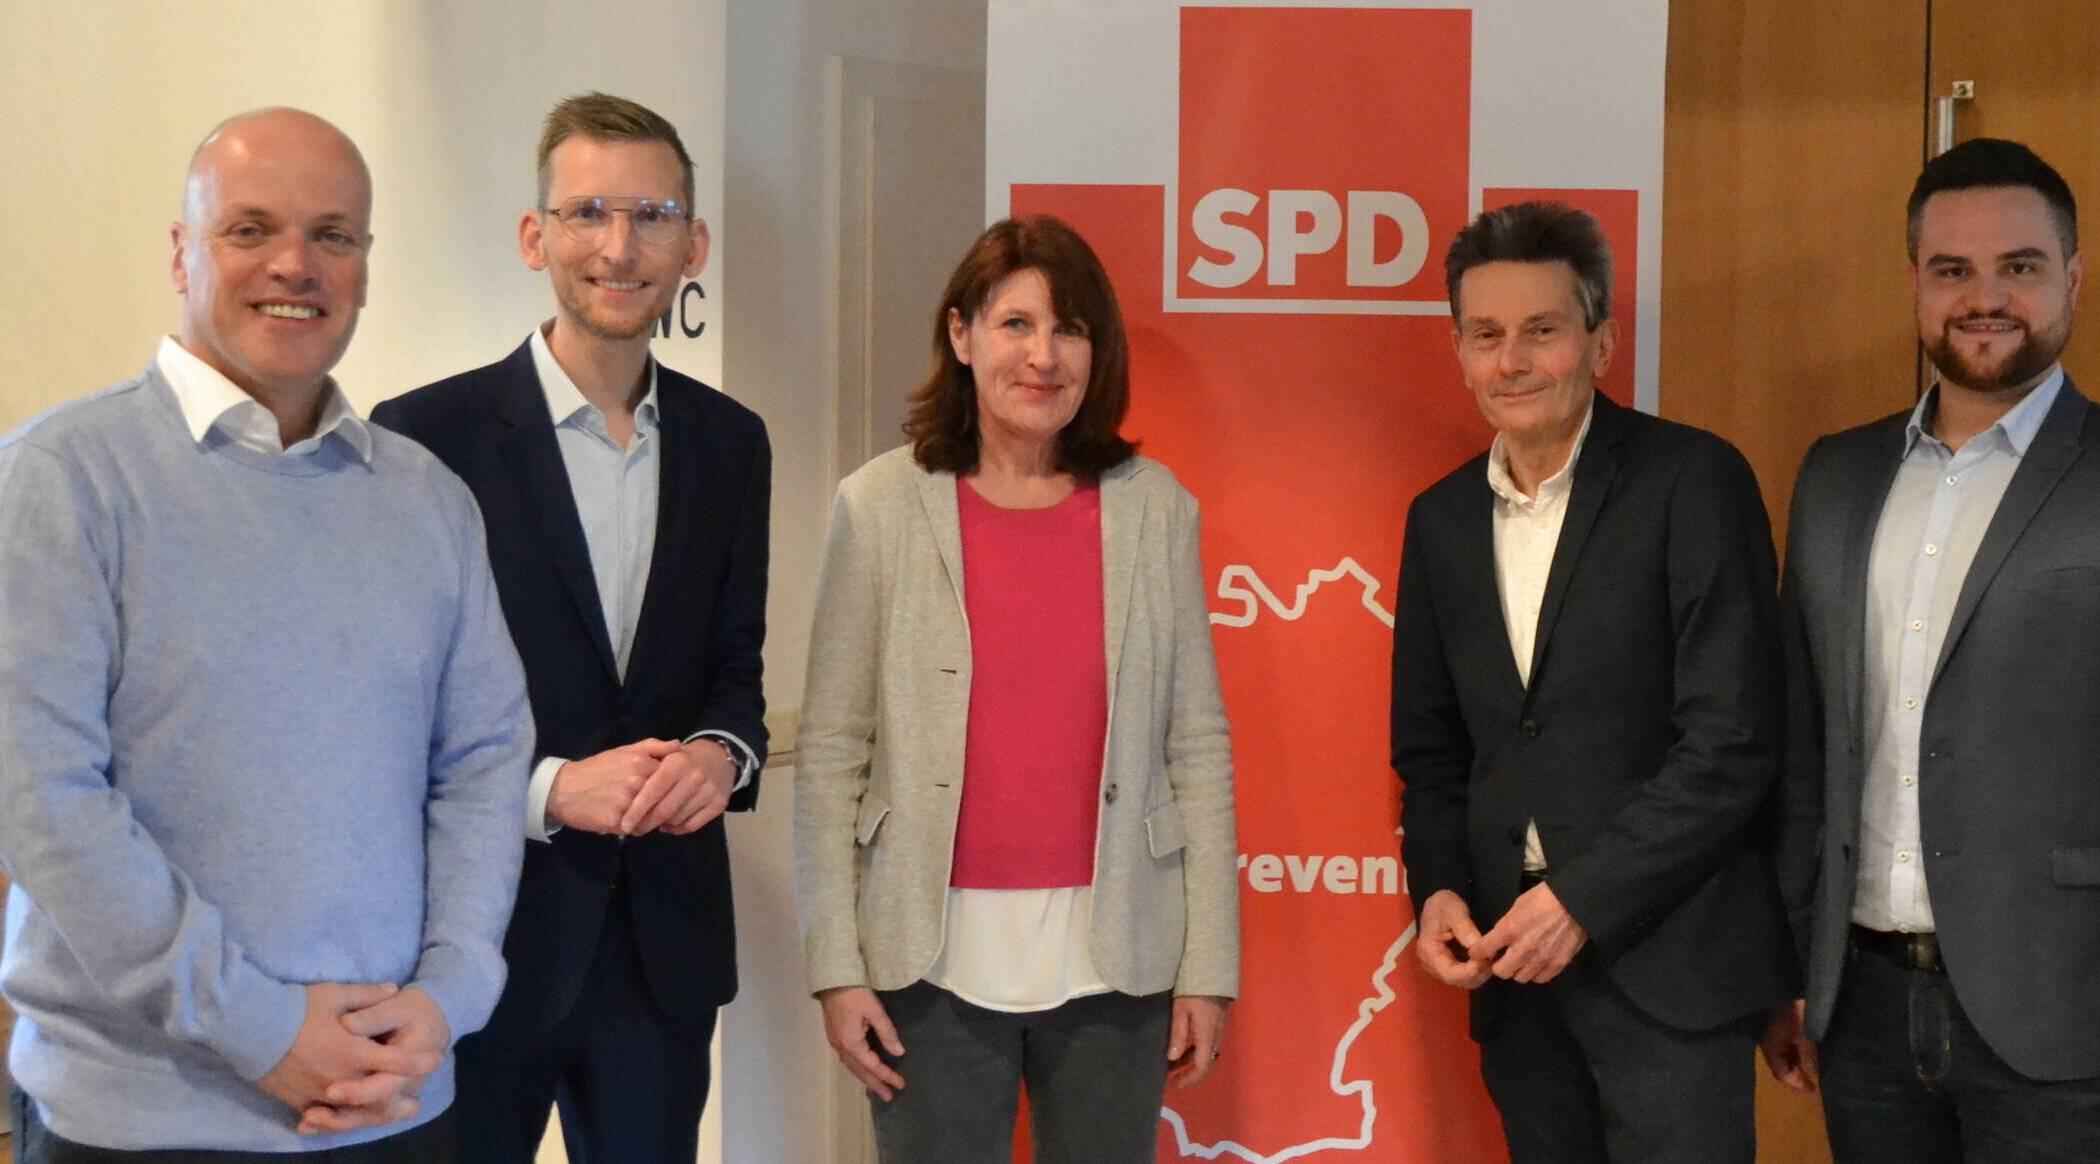  Klaus Krützen (Bürgermeister), Daniel Rinkert (MdB und Vorsitzender der SPD-Ratsfraktion), Birgit Gericke (Vize-Vorsitzende der SPD-Ratsfraktion), Rolf Mützenich (Vorsitzender der SPD-Bundestags-Fraktion) und Daniel Kober (Vorsitzender des SPD-Stadtverband). 